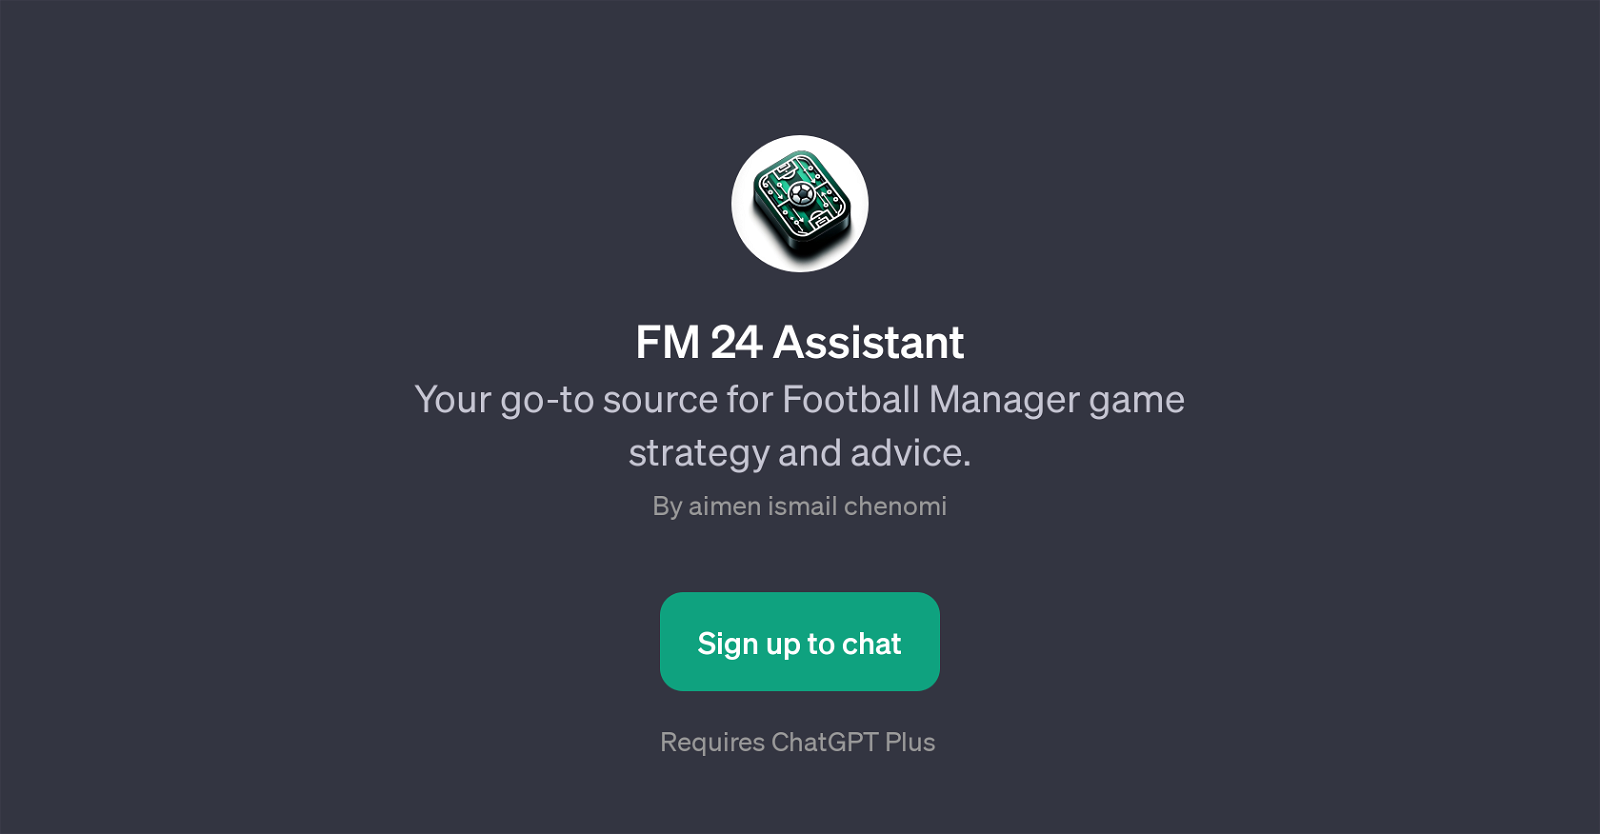 FM 24 Assistant website